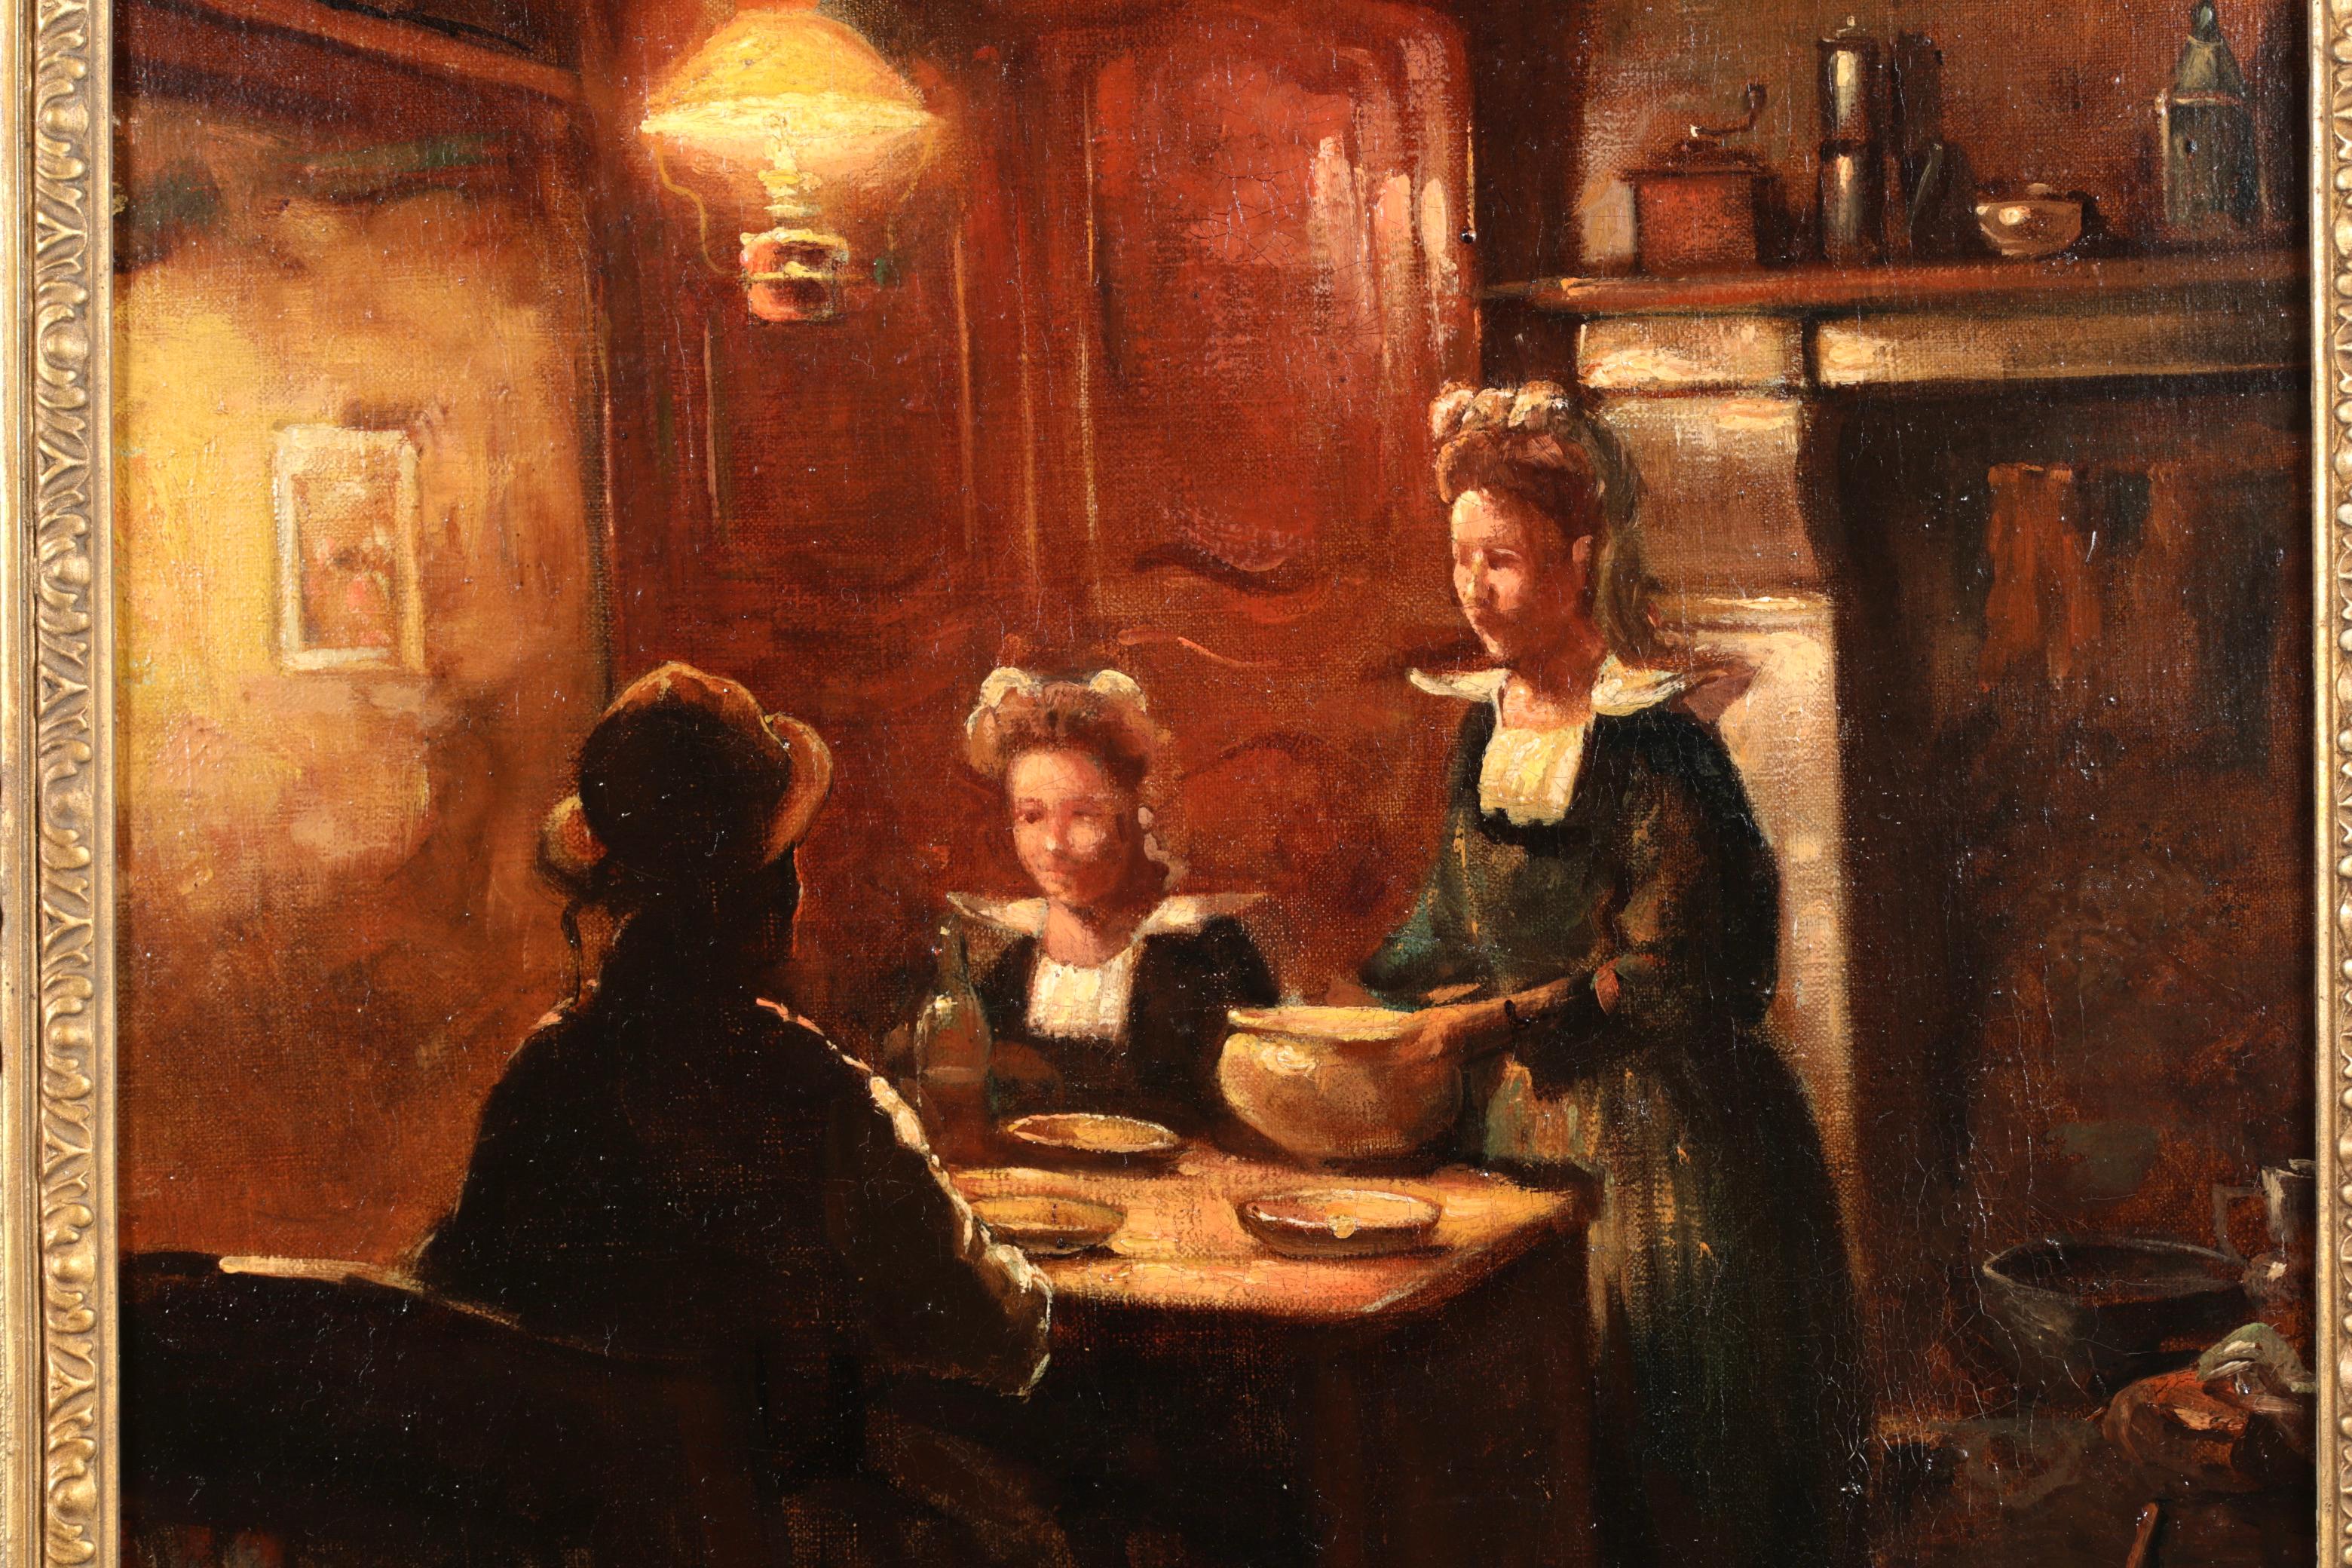 Signierte Figuren in Interieur Öl auf Leinwand um 1910 von gesuchten Französisch impressionistischen Maler Edouard Leon Cortes. Dieses charmante und nostalgische Werk zeigt eine Familie beim Abendessen in einer typisch bretonischen Küchenszene. Ein